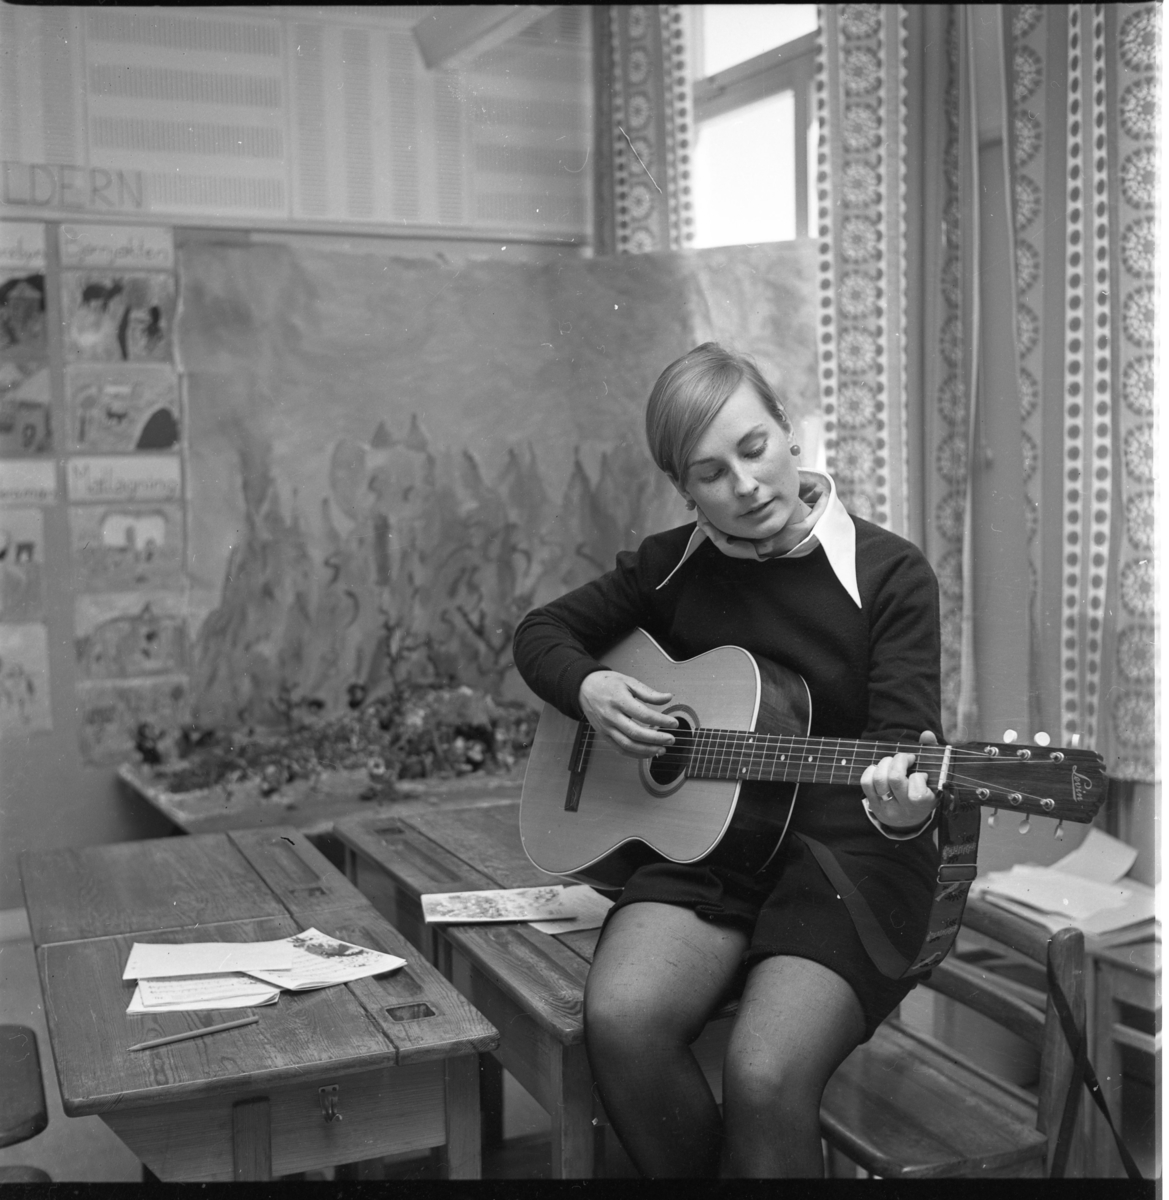 Lärarinnan Marietta Juhlin sitter på kanten av en skolbänk och spelar gitarr. På Ribbaskolan i Gränna.